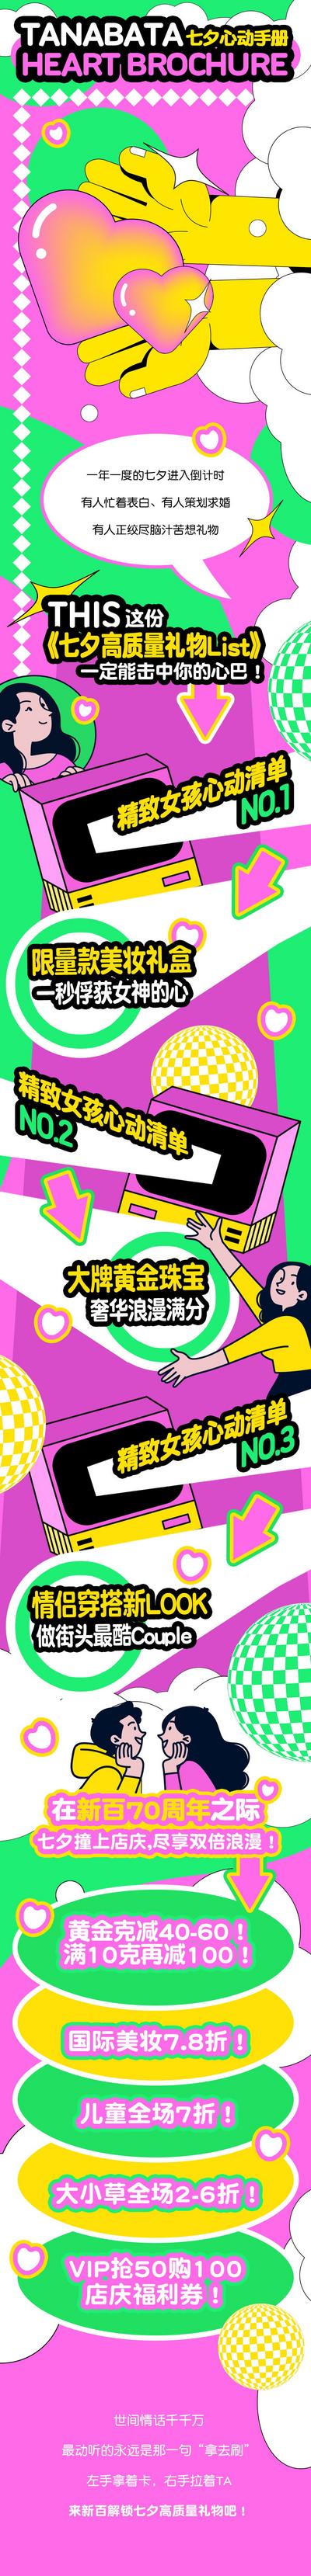 南门网 海报 长图 促销 商业 超市 中国传统节日 七夕 潮流 撞色 推文 专题